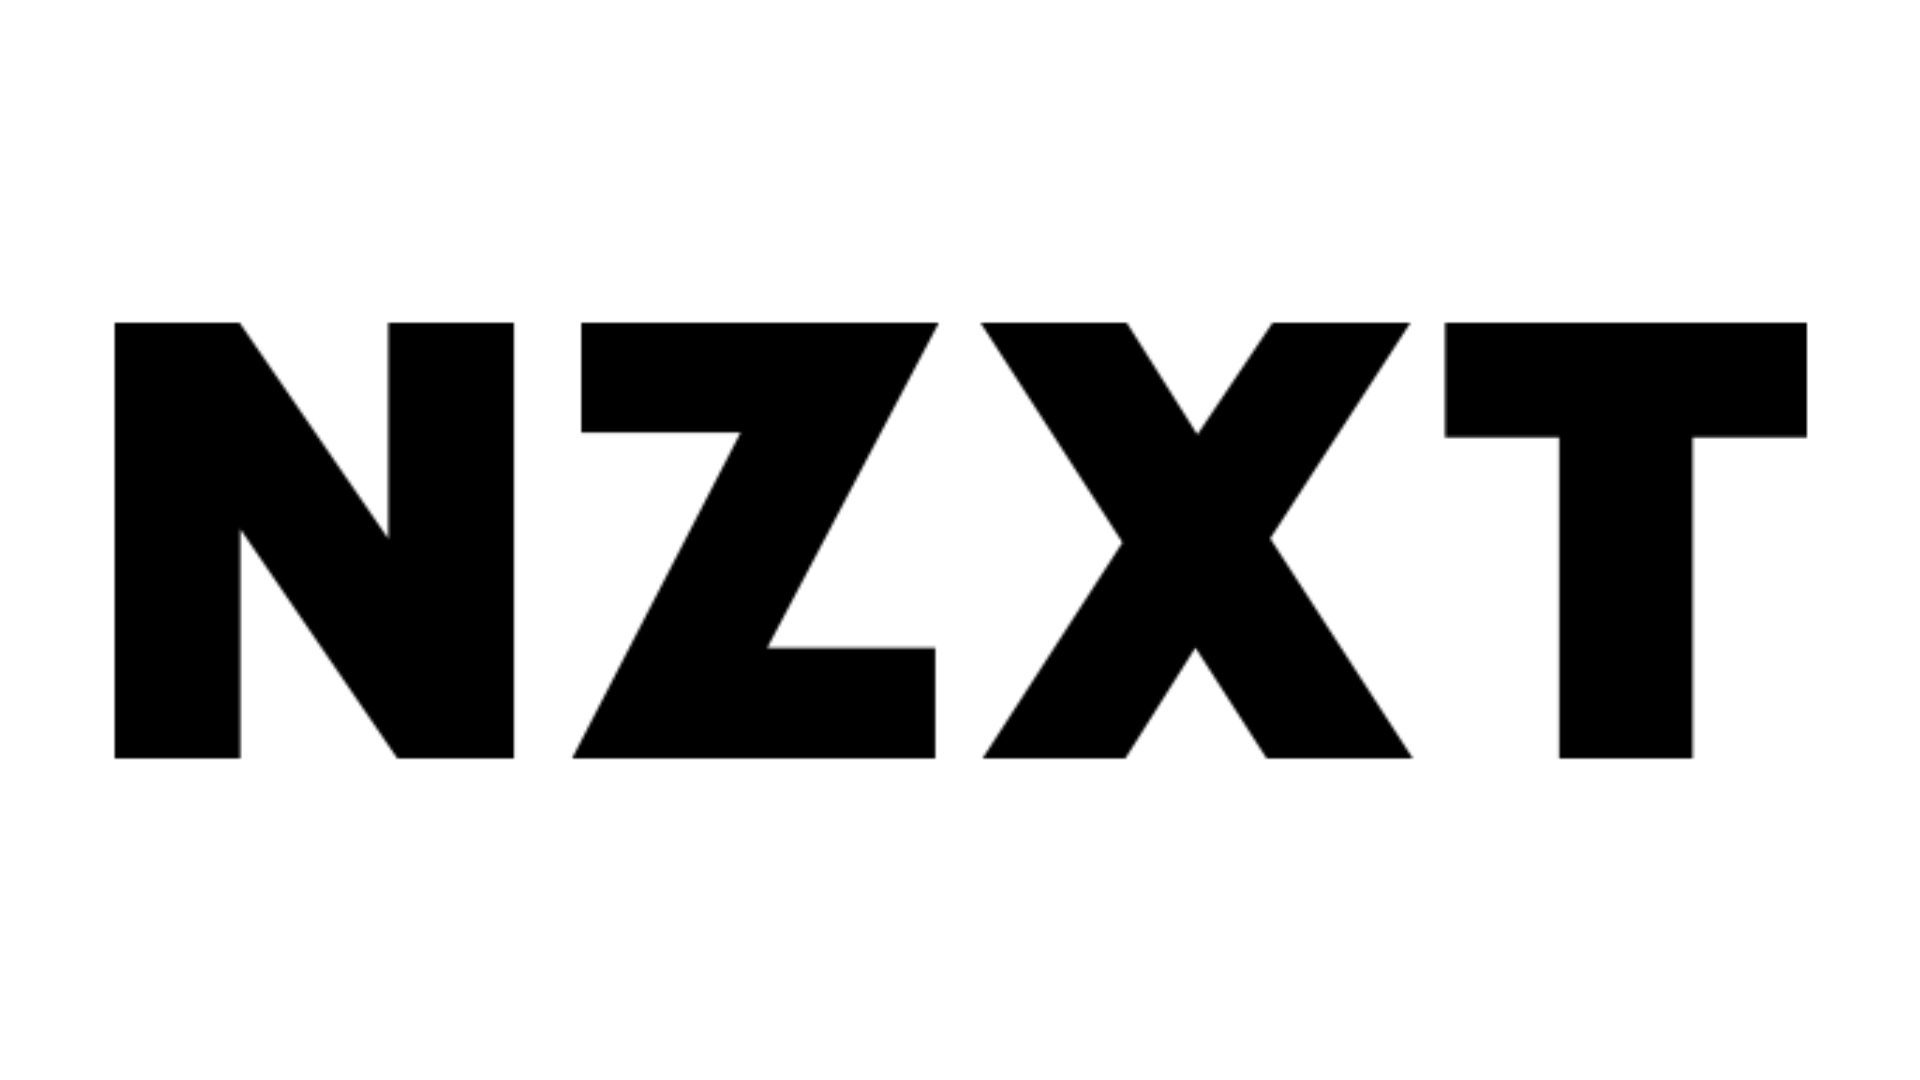 Beste websites voor aangepaste pc -builds, nummer 2: NZXT. Het logo staat op een zwarte achtergrond